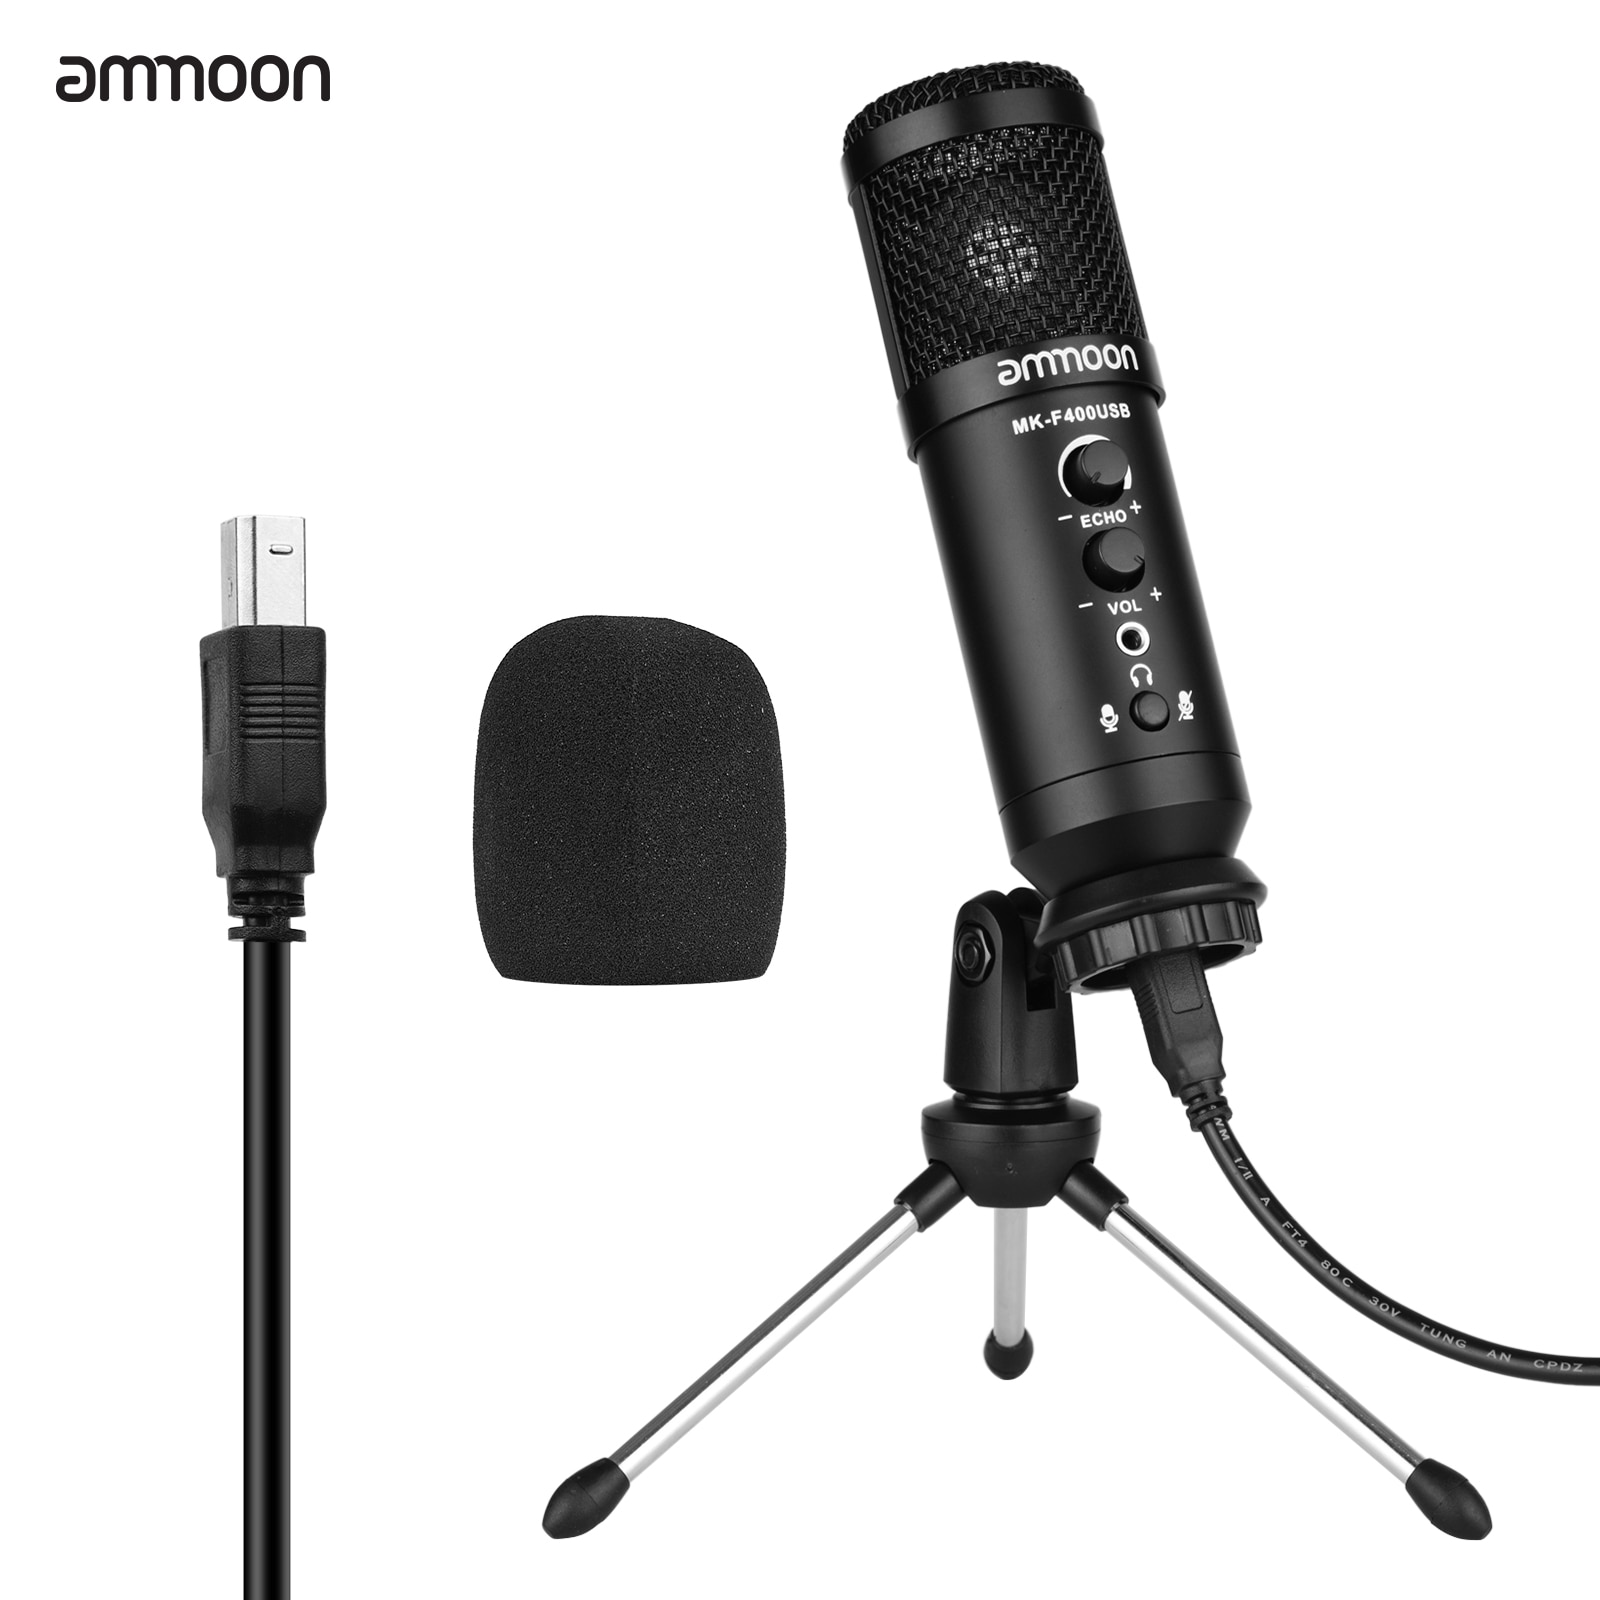 Ammoon Usb Condensator Microfoon Computer Microfoon Kit Met Mini Desktop Metal Tripod Stand Voorruit Usb Kabel Voor Muziek Opname